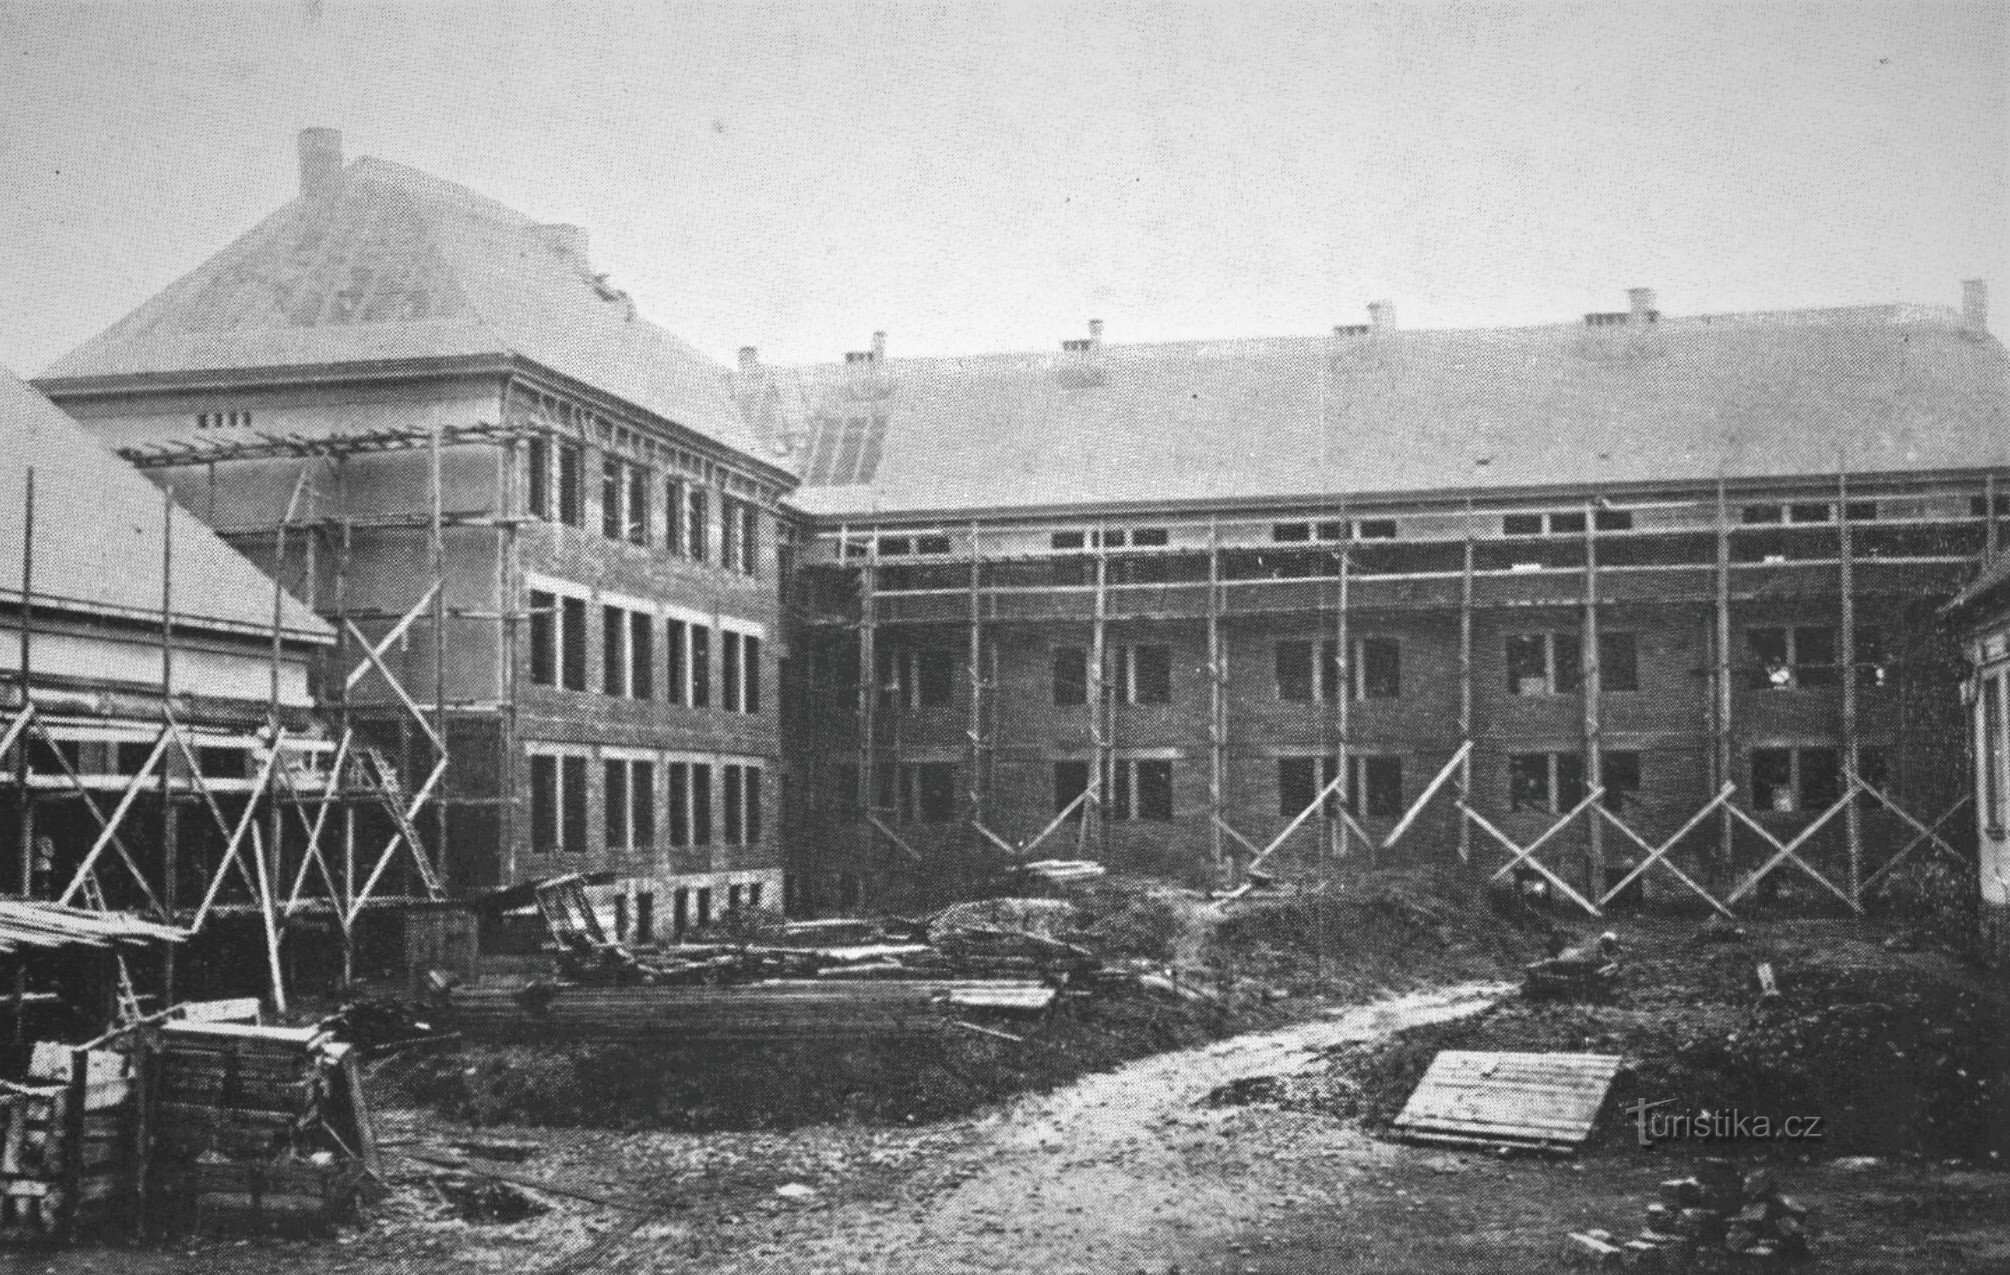 Construção do imóvel Trutnov (1927)